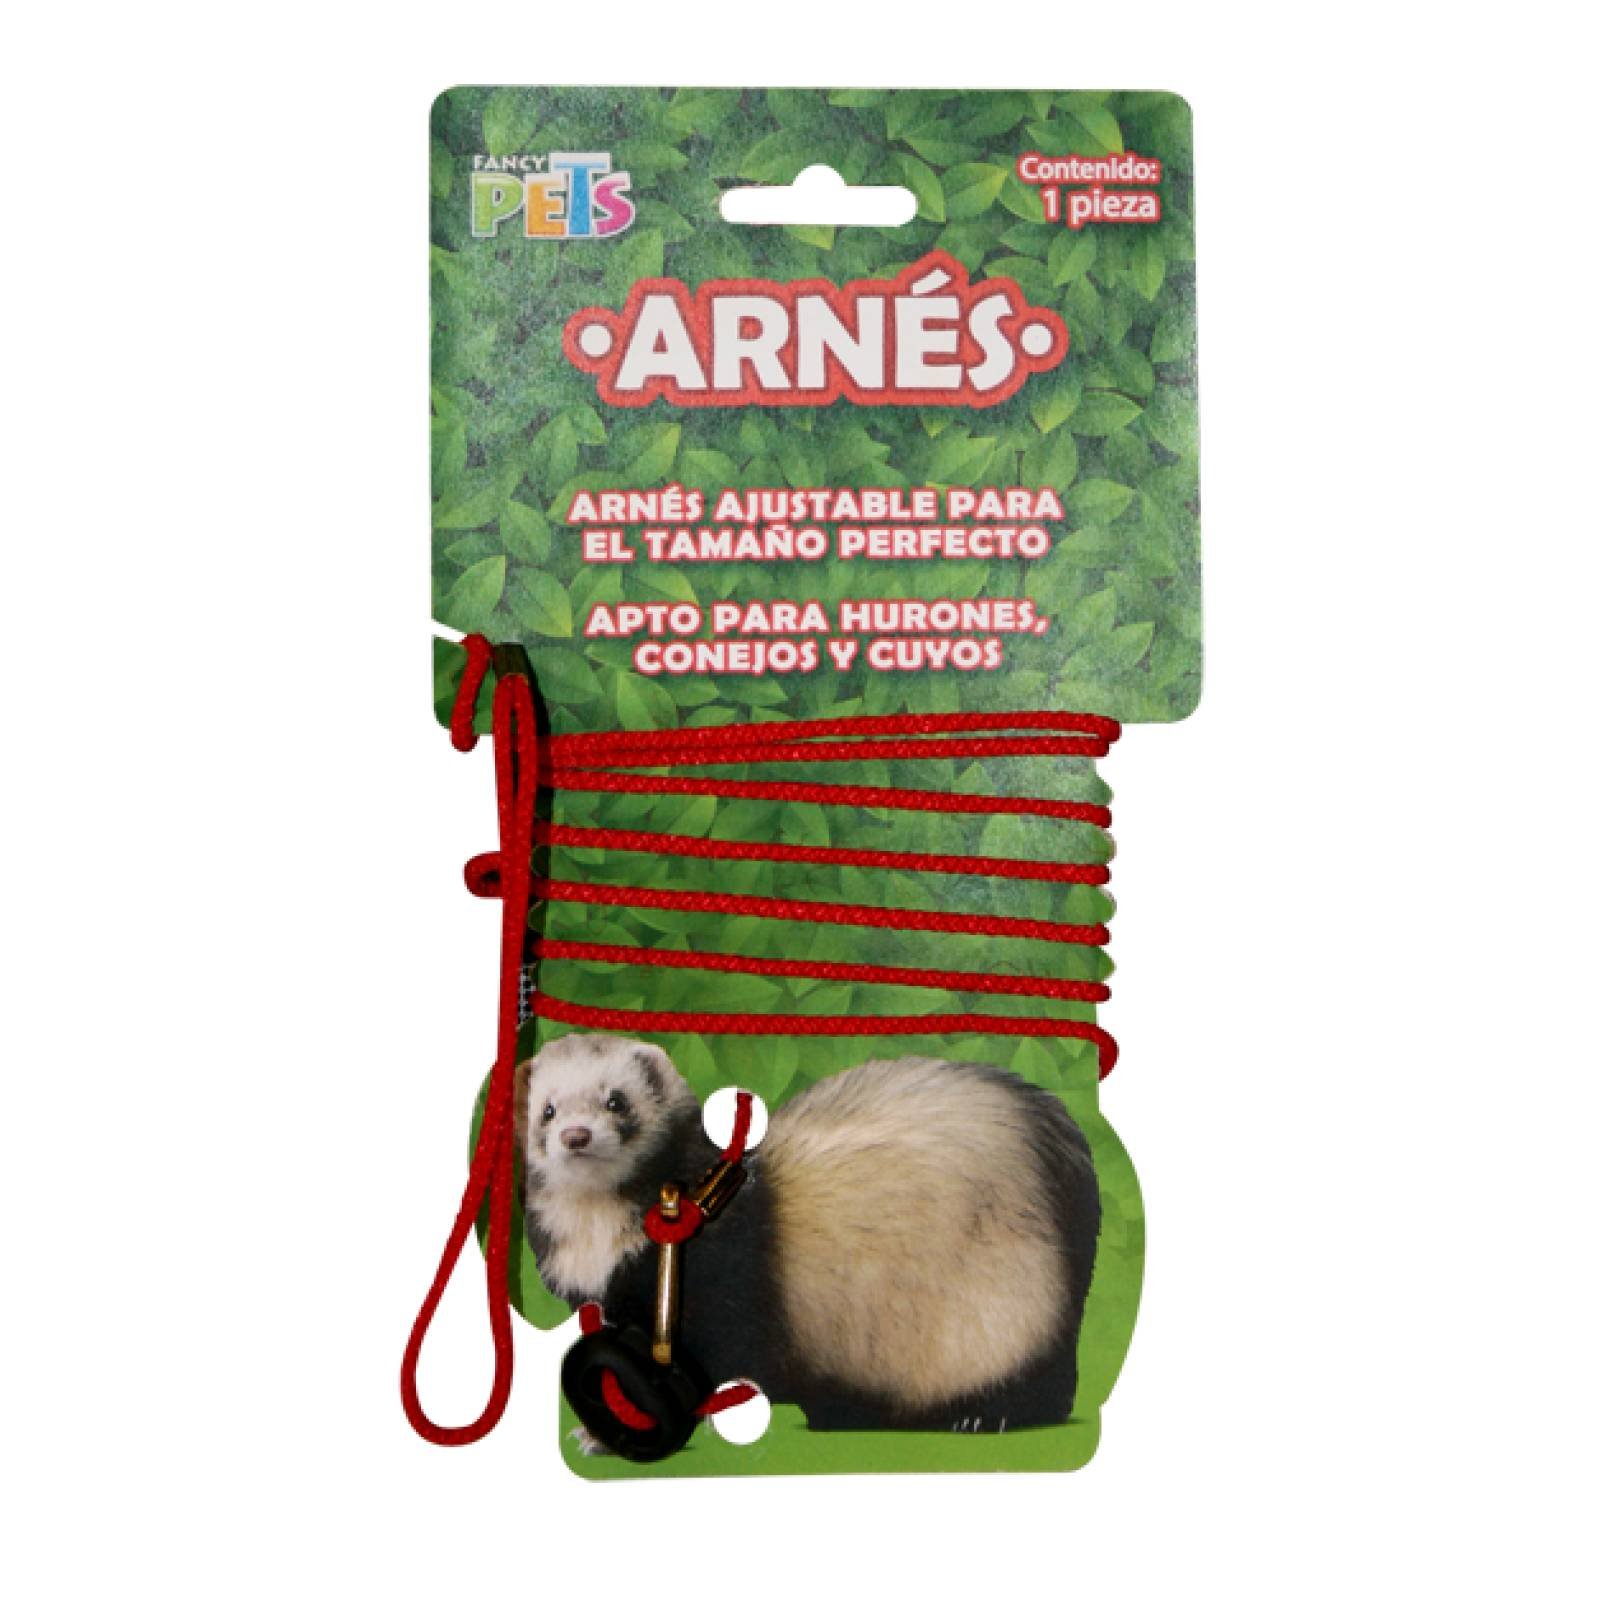 Fancy Pets Arnes ajustable para Pequeños mamiferos